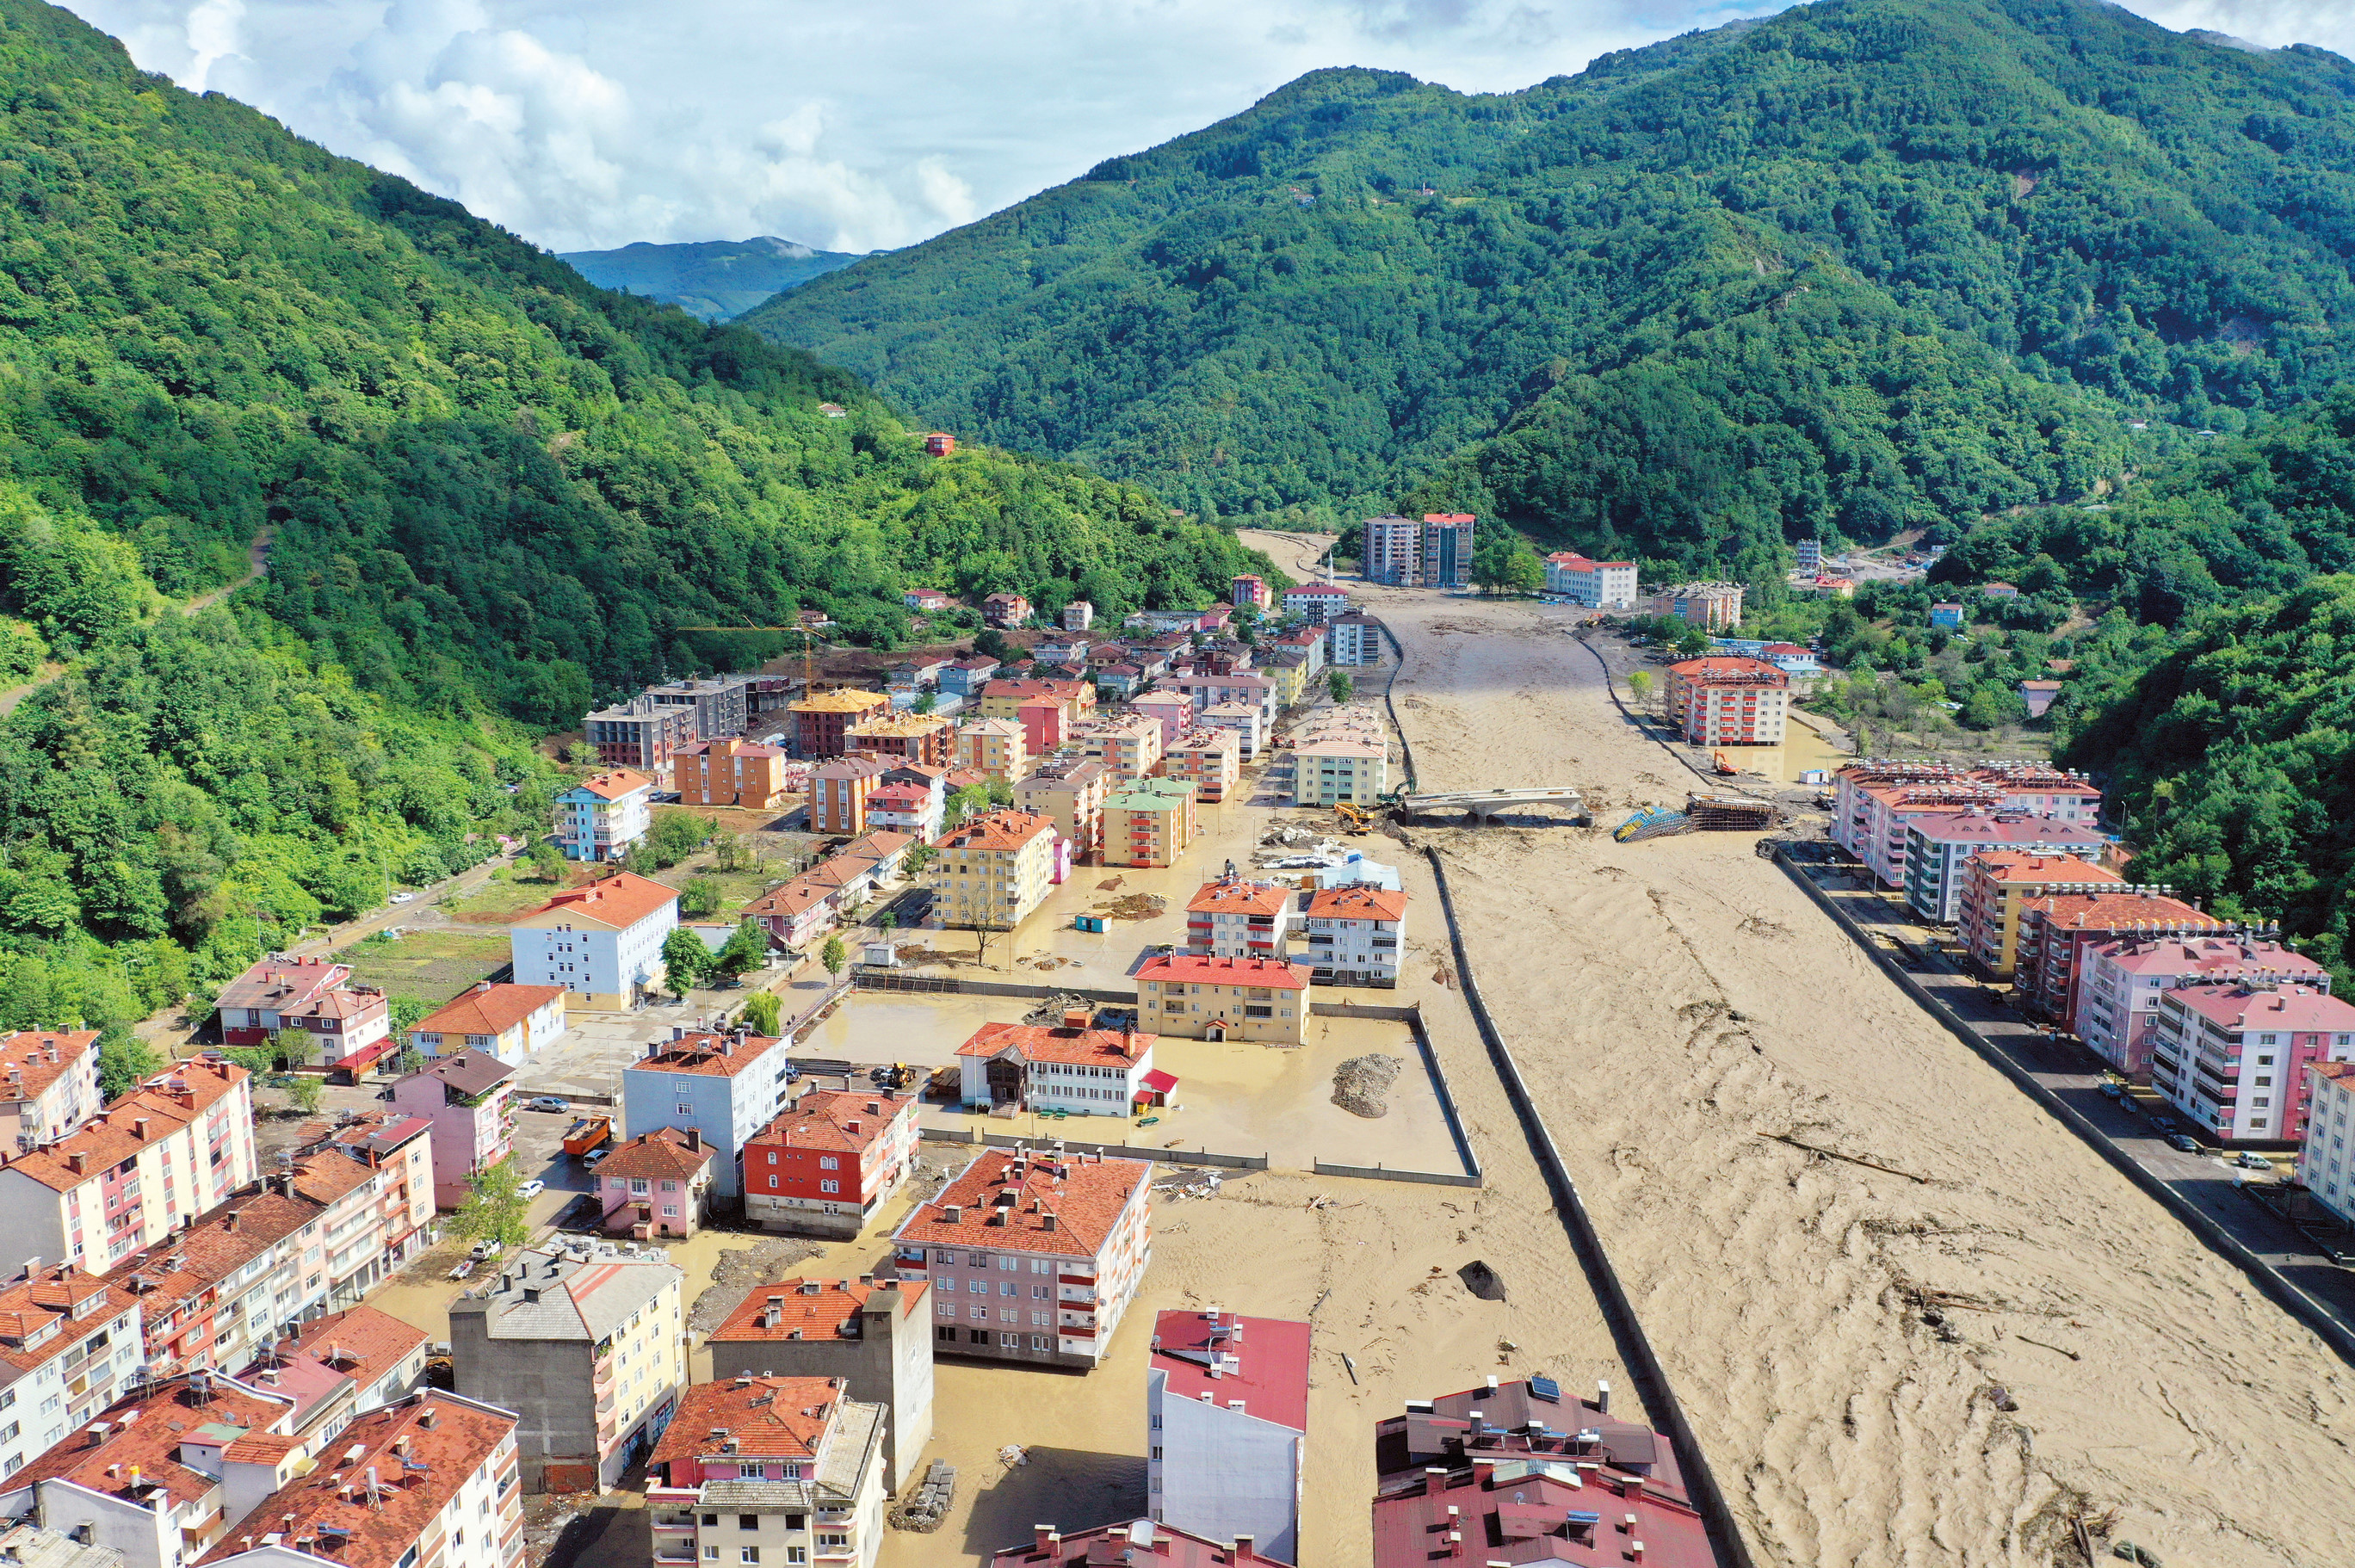 Geçen yıl 11 Ağustos'ta sel felaketi yaşayan Bozkurt'ta yine benzer görüntüler noluştu. Köprüler yıkıldı. 